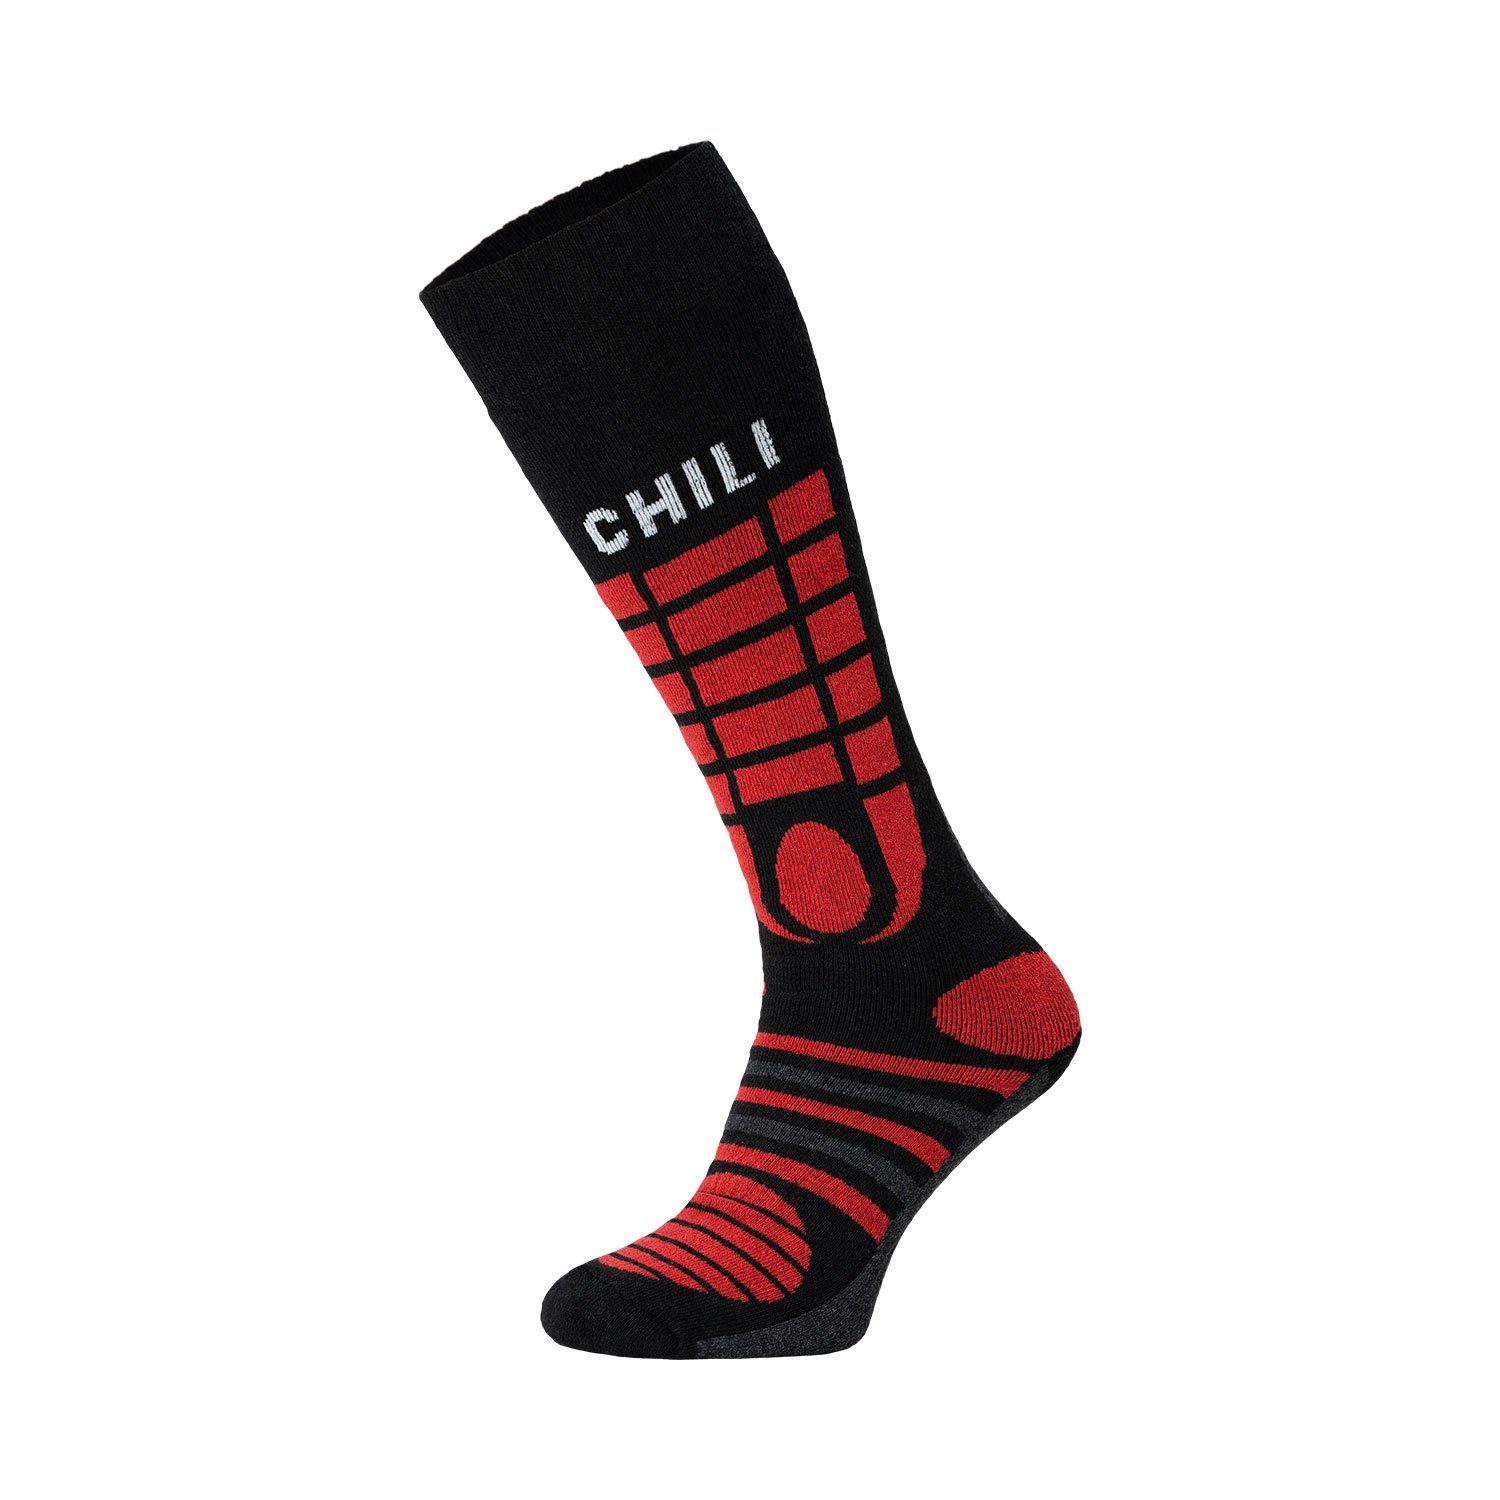 Chili Lifestyle Ski Knie Strümpfe Socken Yeon/Red 4 Winter Paar